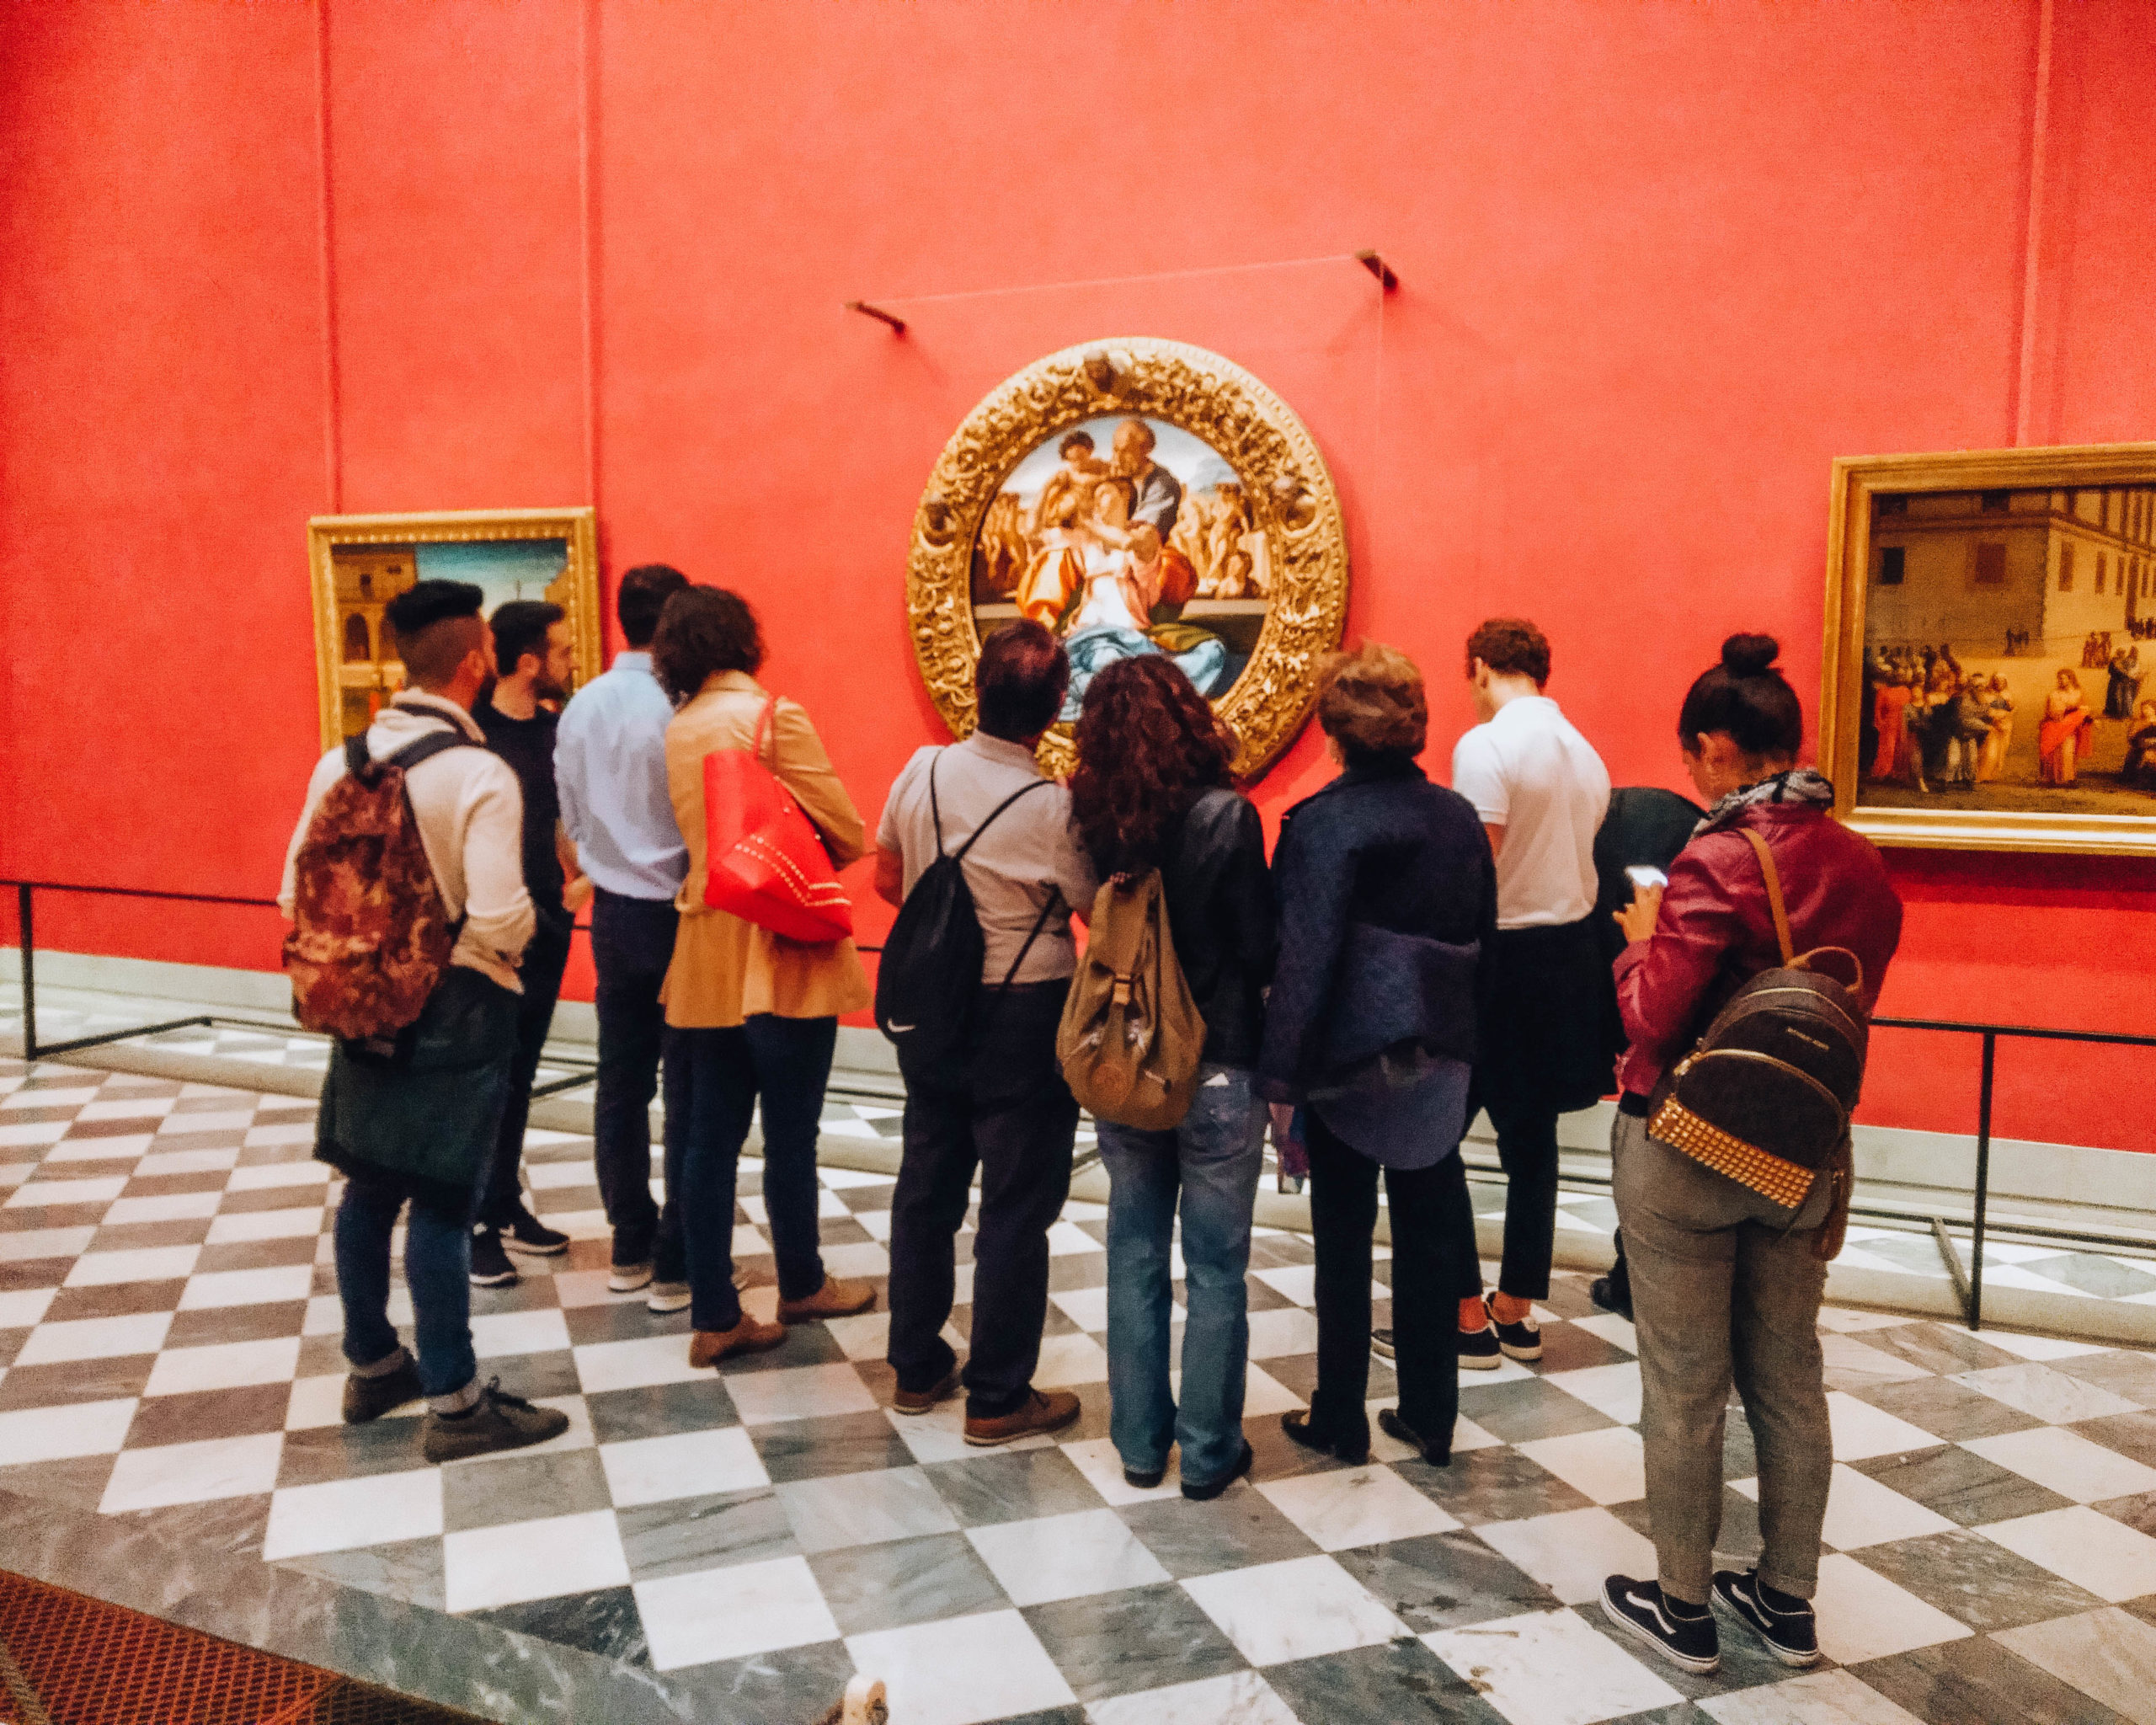 Musei fiorentini: la guida completa dei musei a Firenze